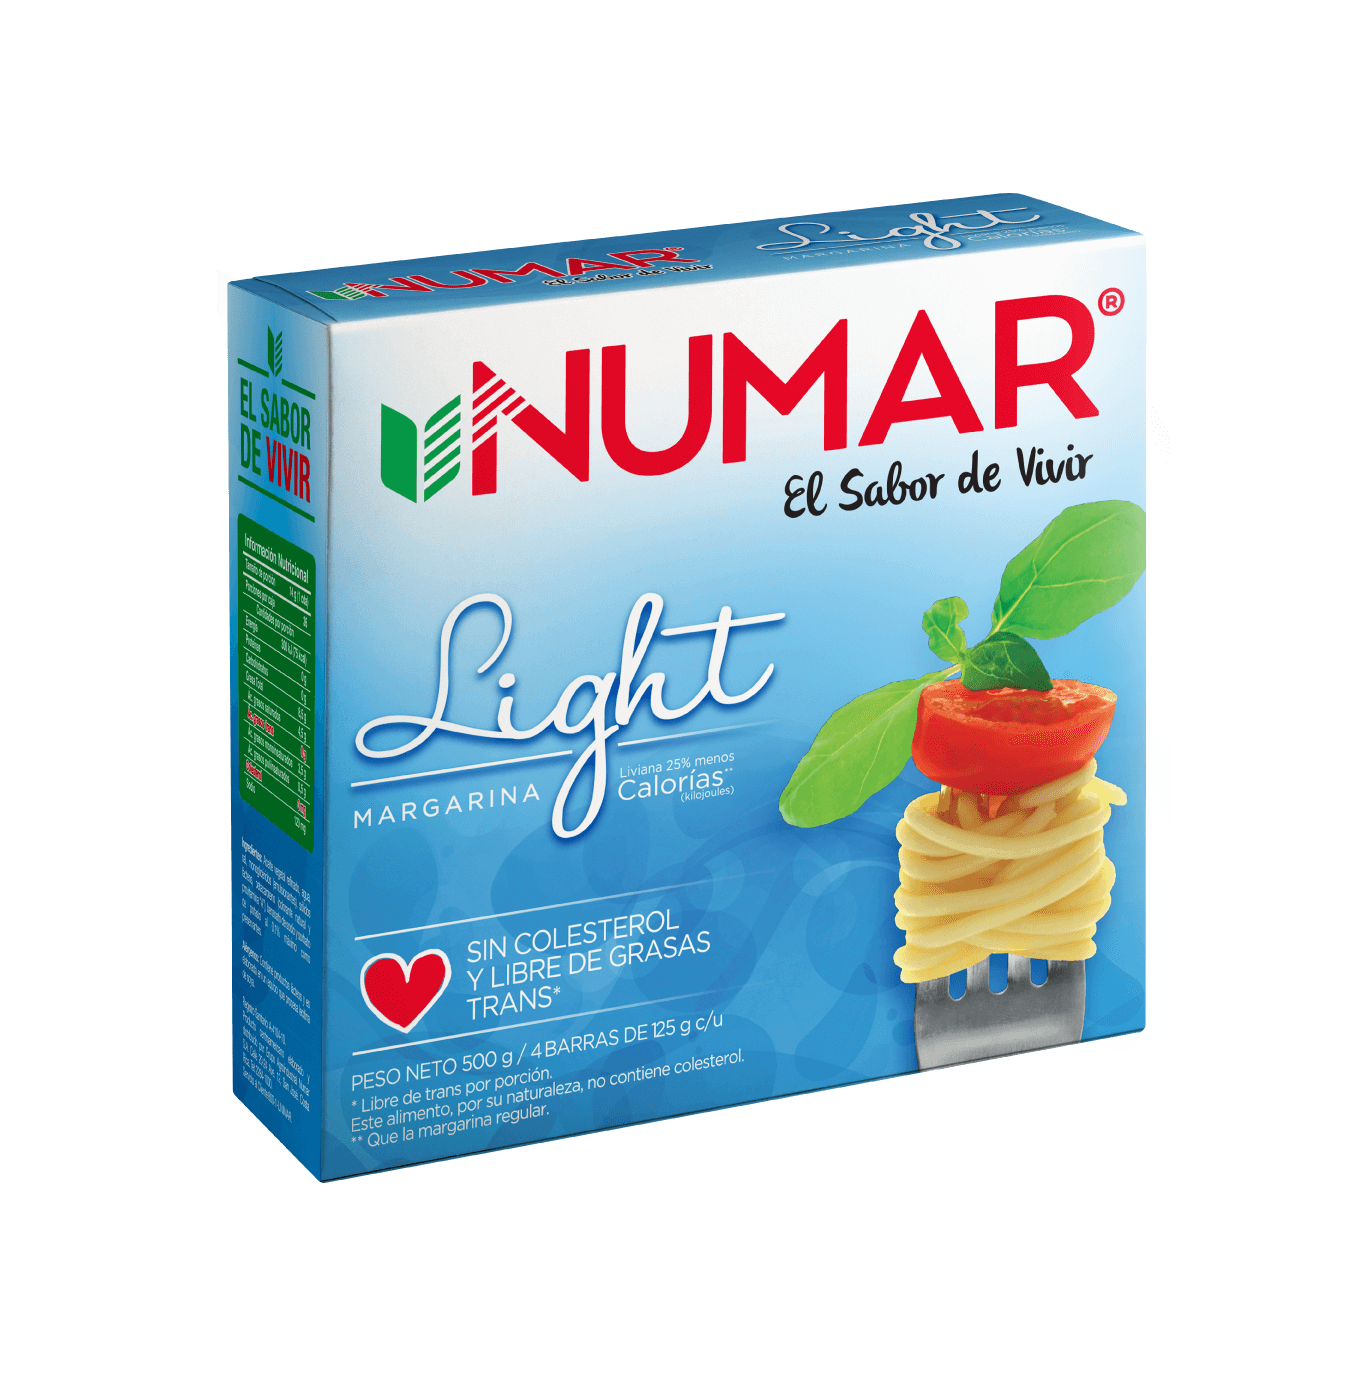 Numar light